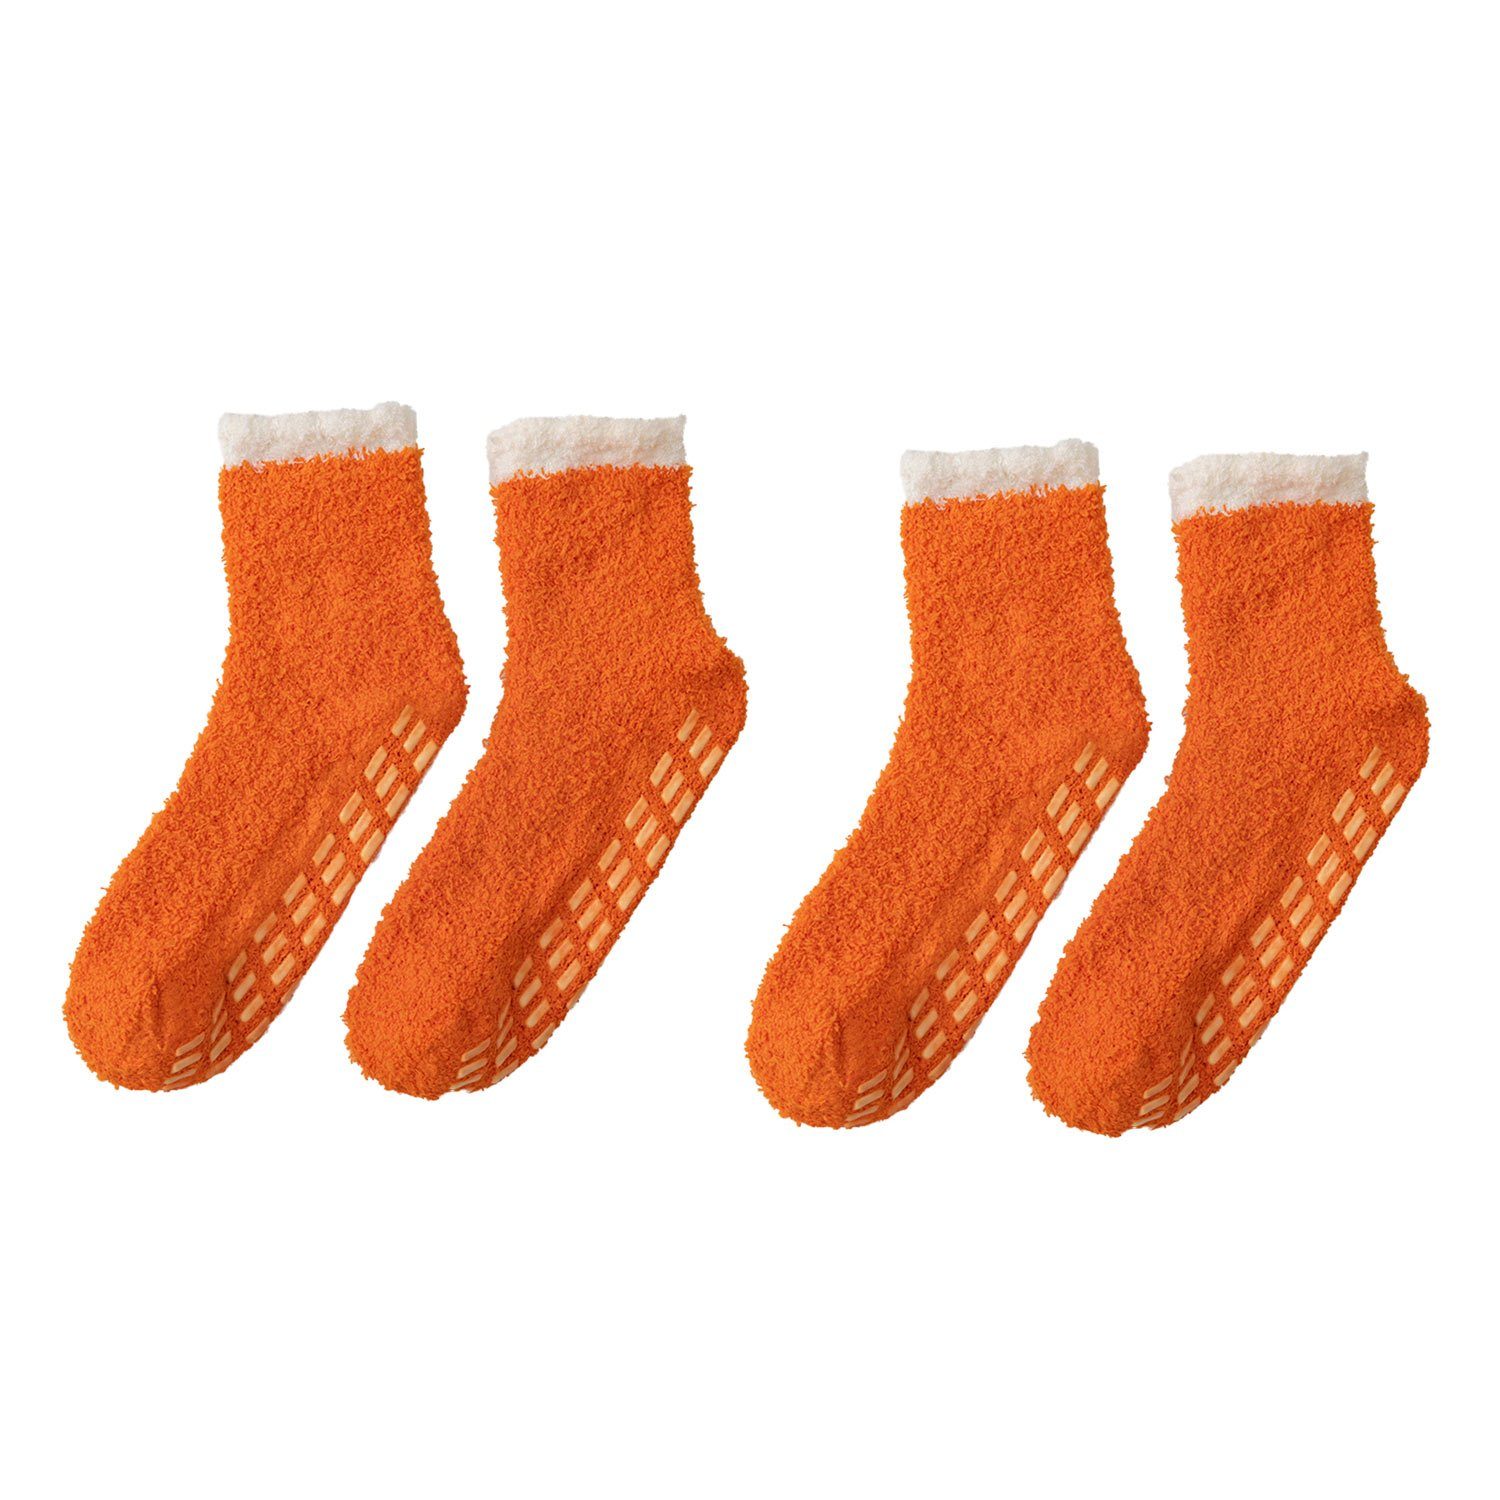 MAGICSHE Langsocken 2 Paare für Winter weiche flauschige Socken Rutschfeste und warme Fleece Socken orange1